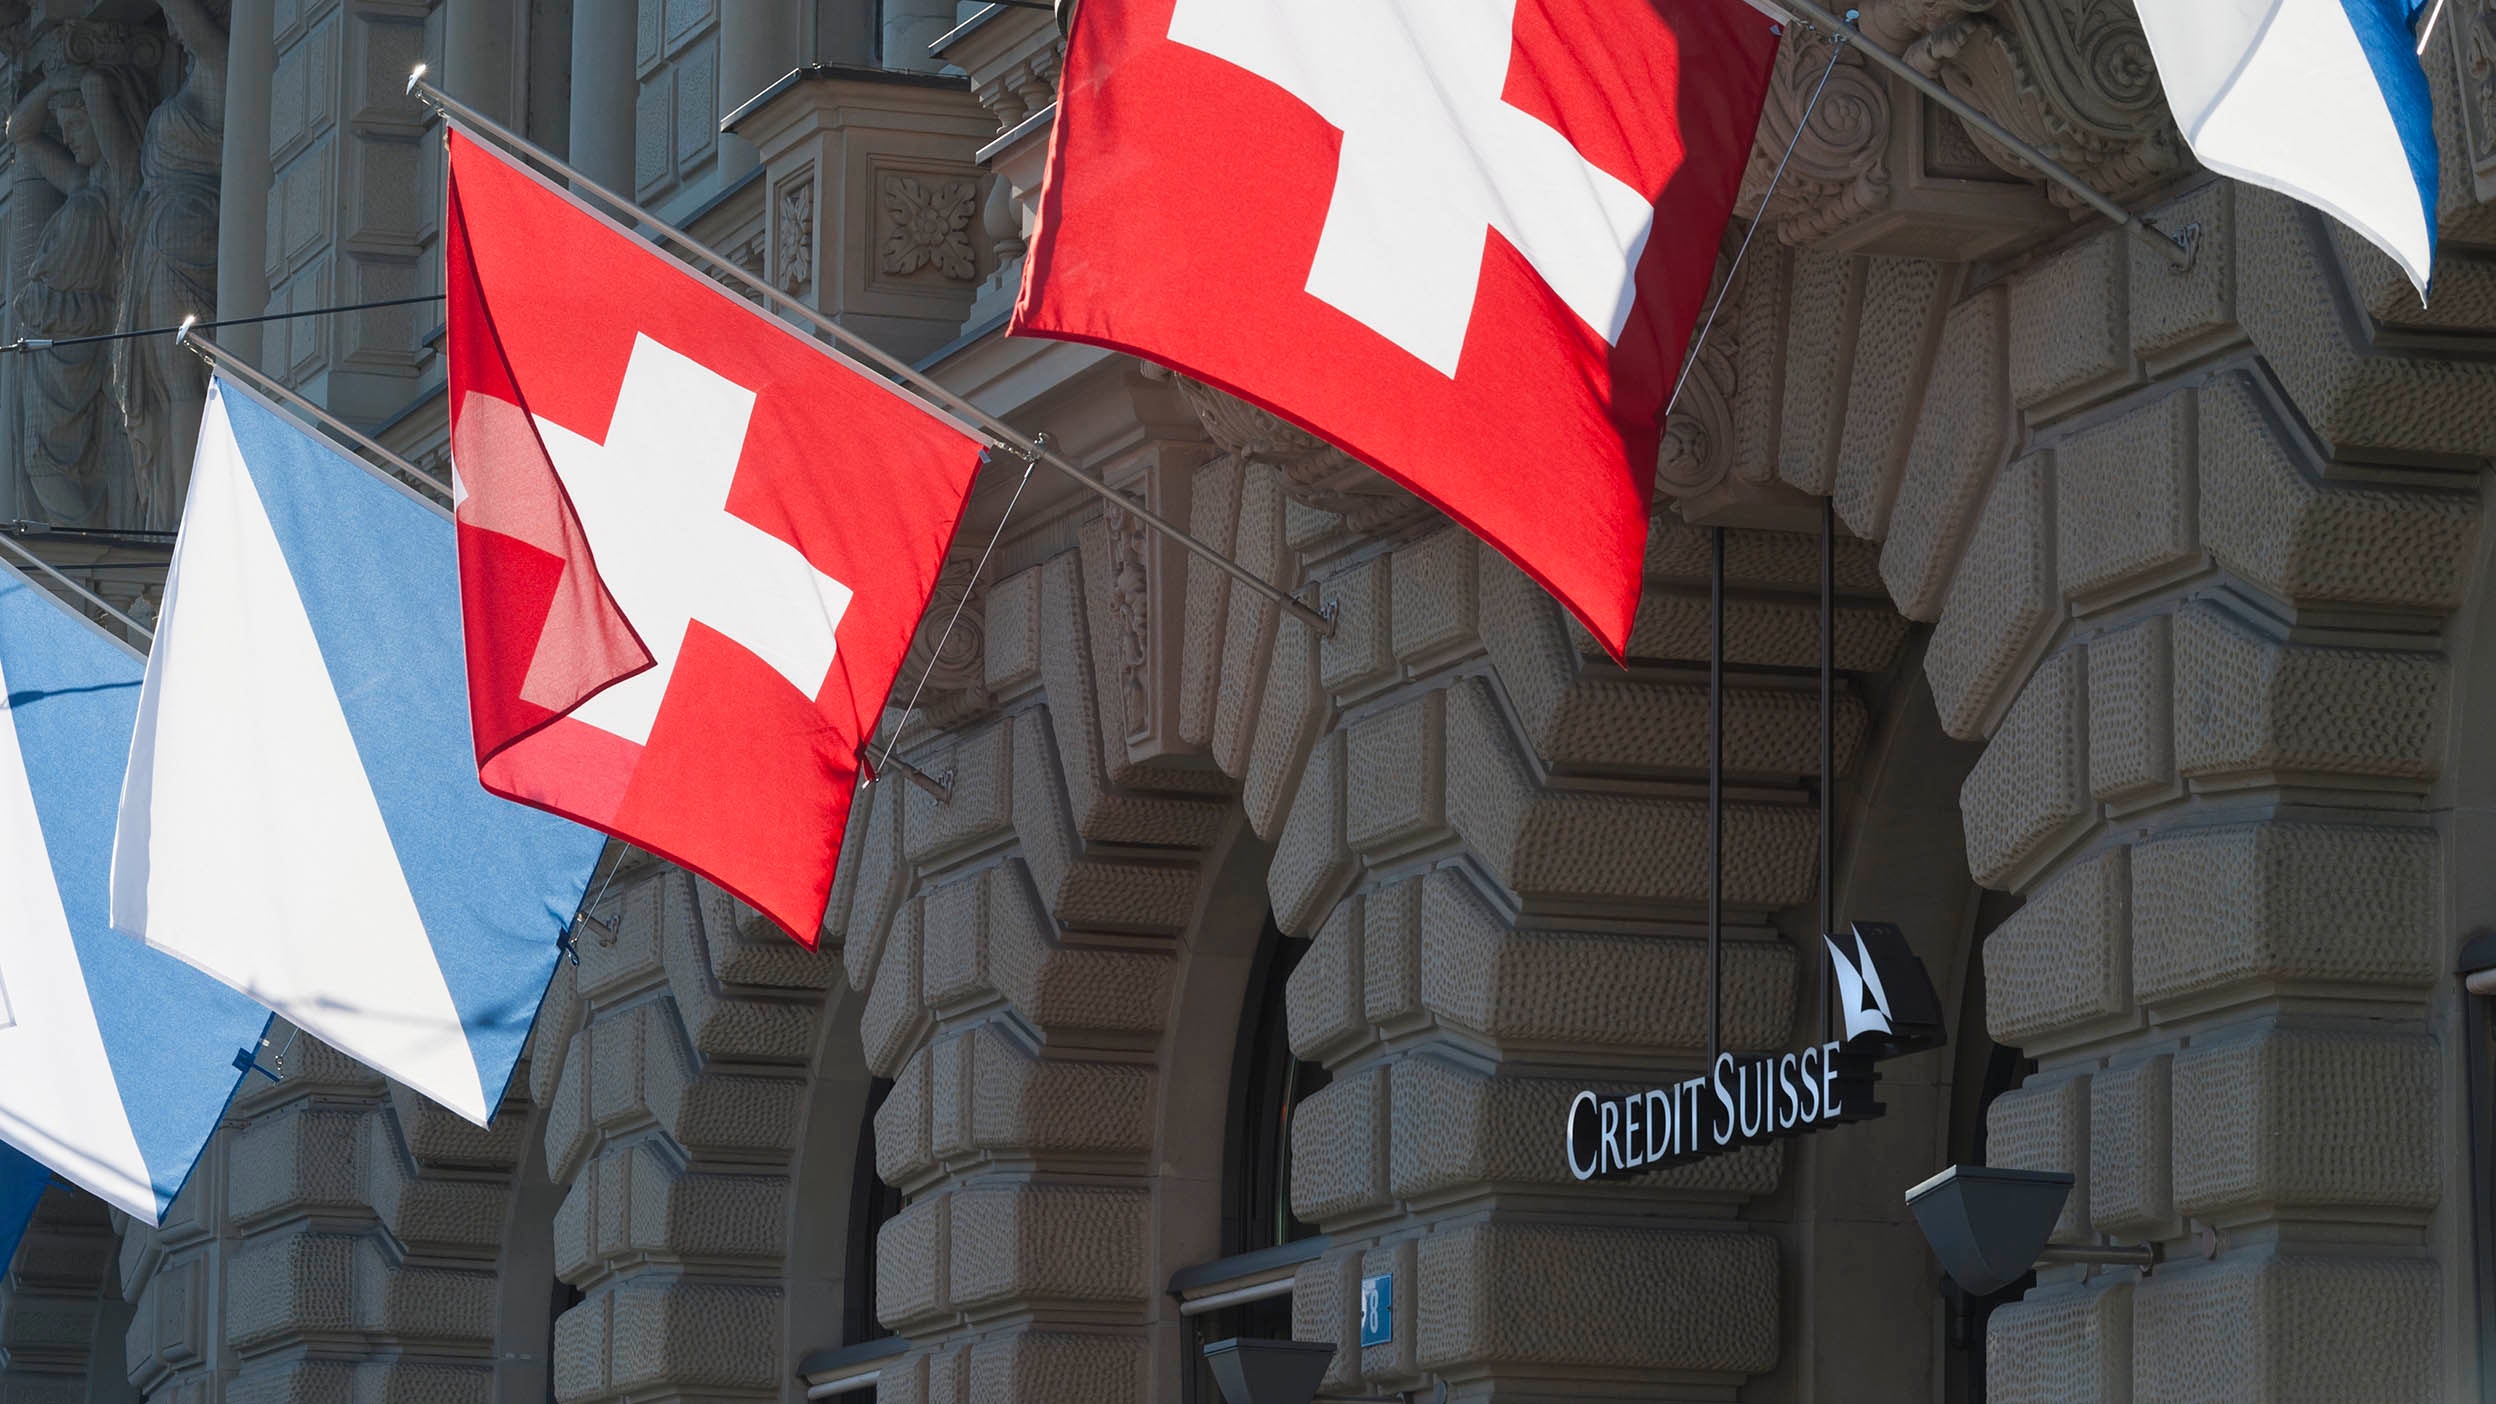 Credit suisse buidling